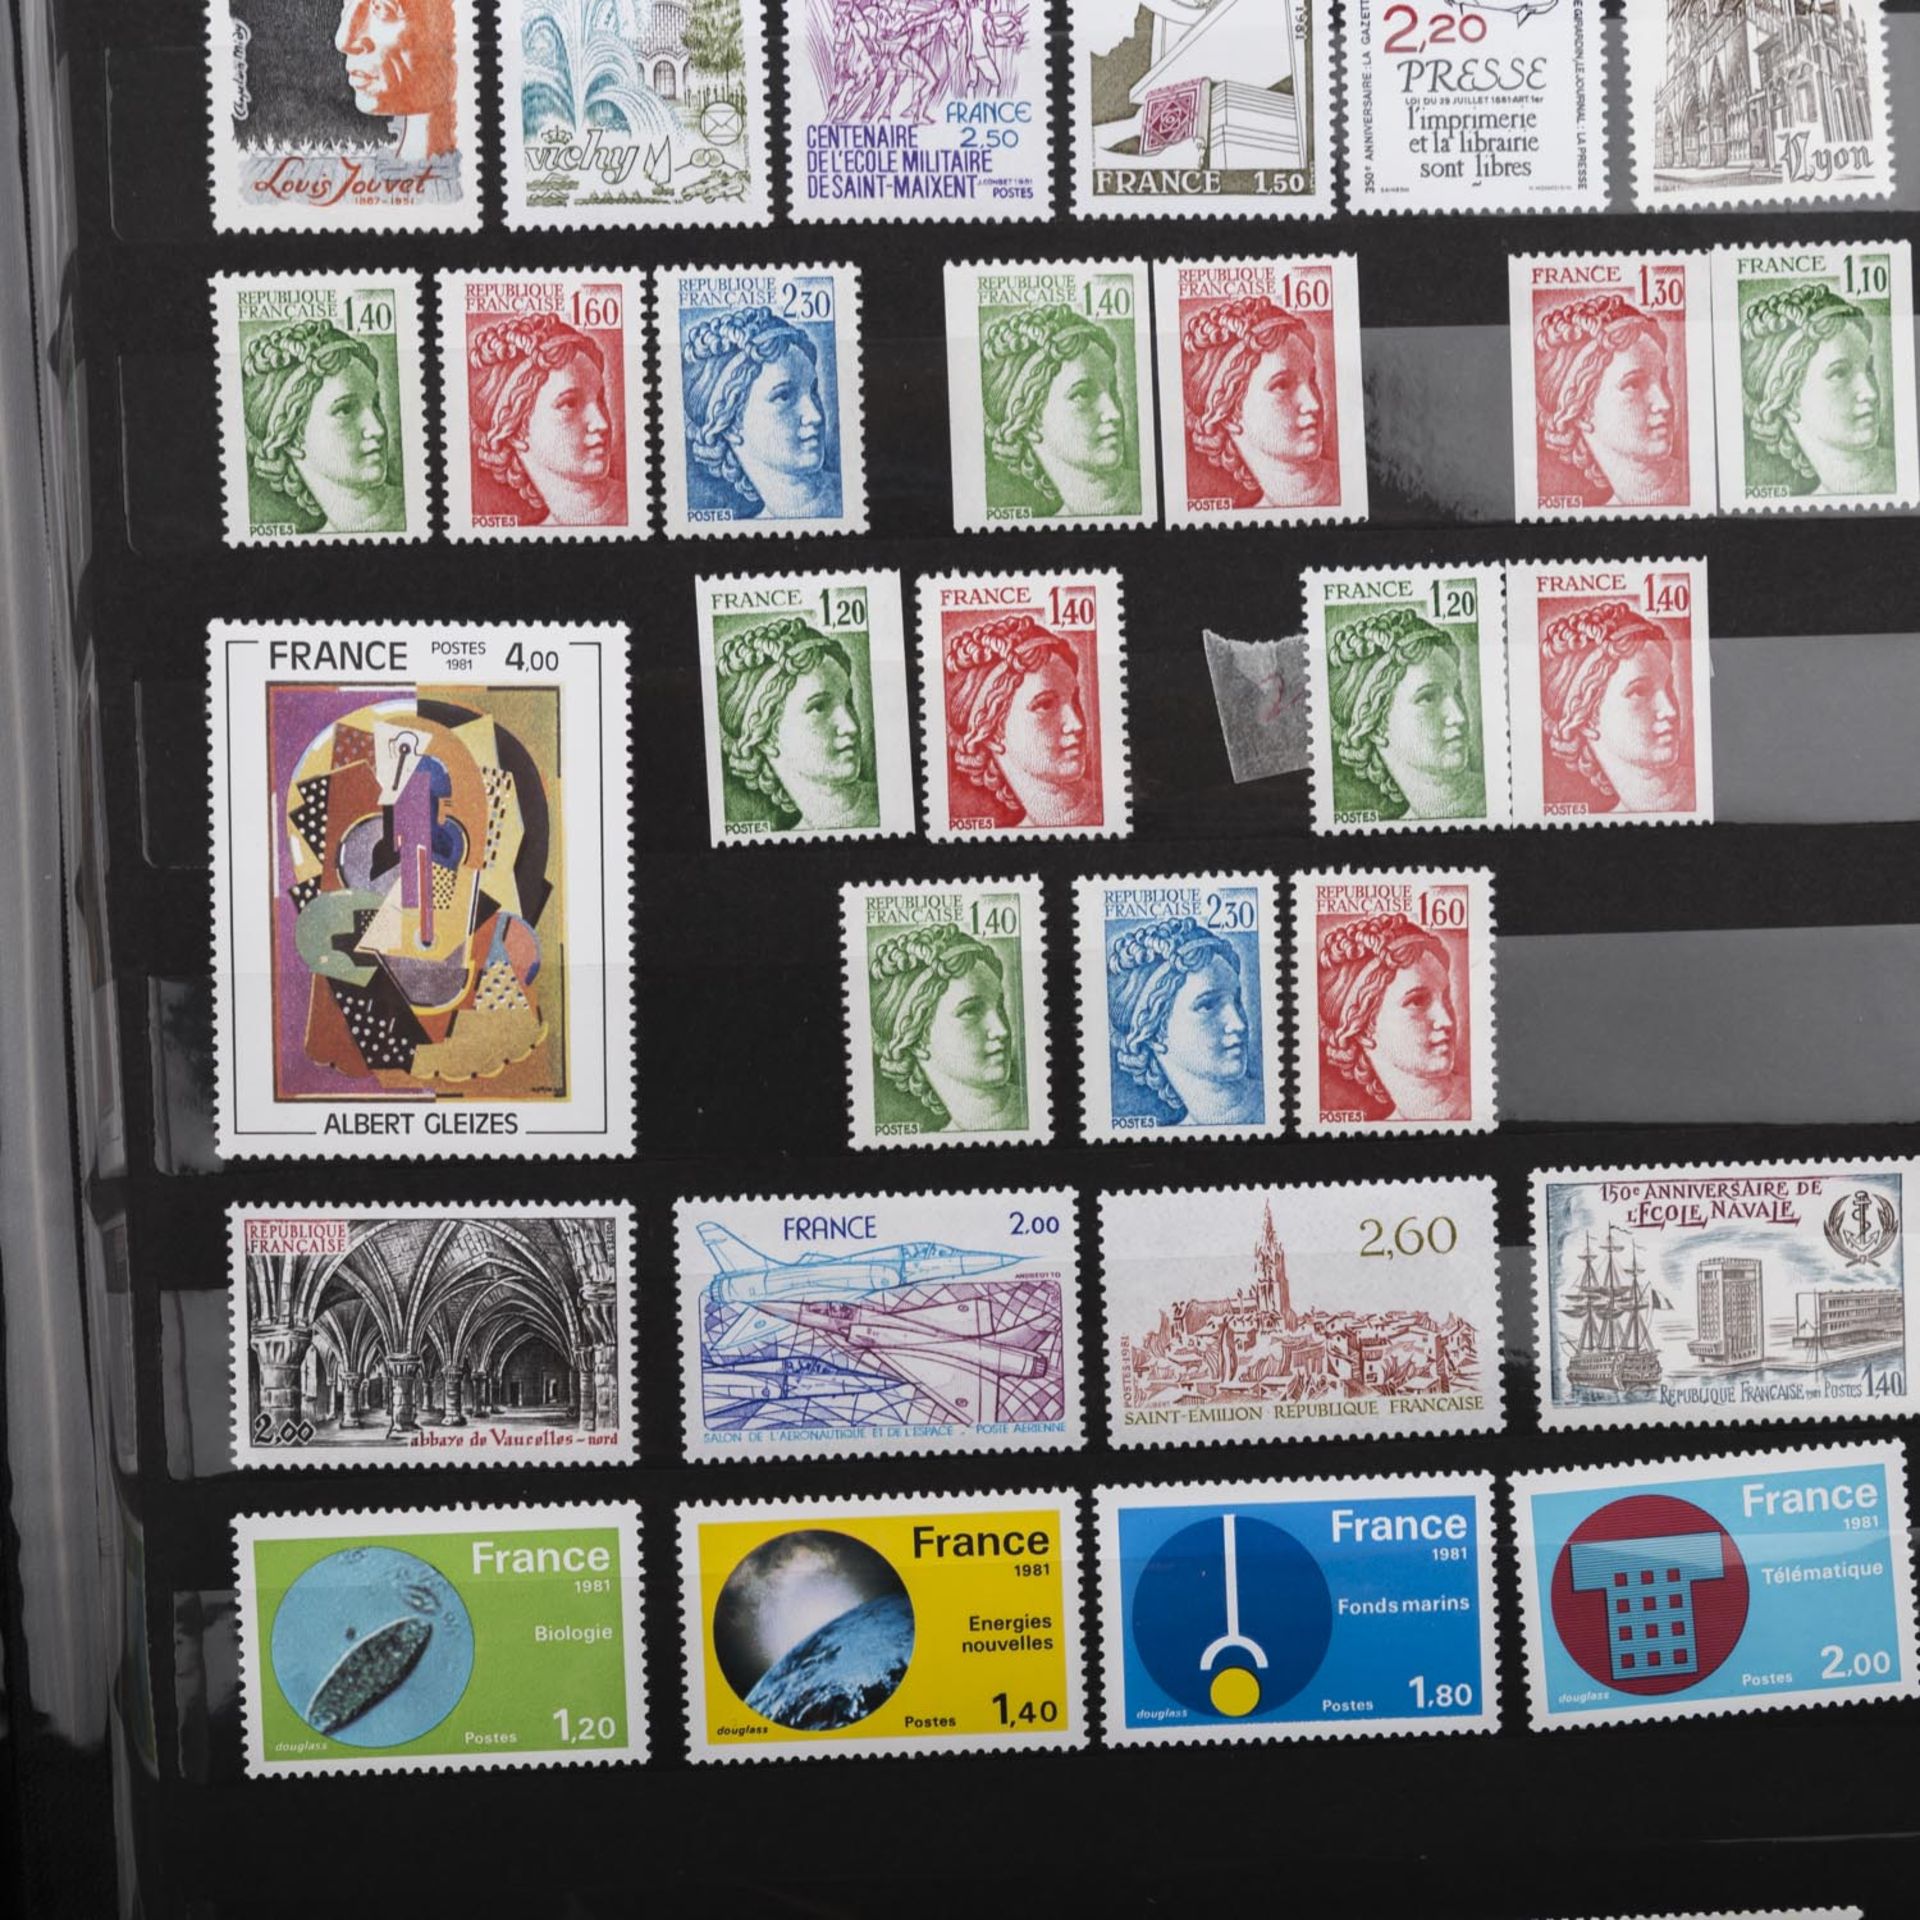 Frankreich - aus 1969/83, Sammlungmit vielen postfrischen Ausgaben, teils mit Markenheftchen, in - Bild 4 aus 13